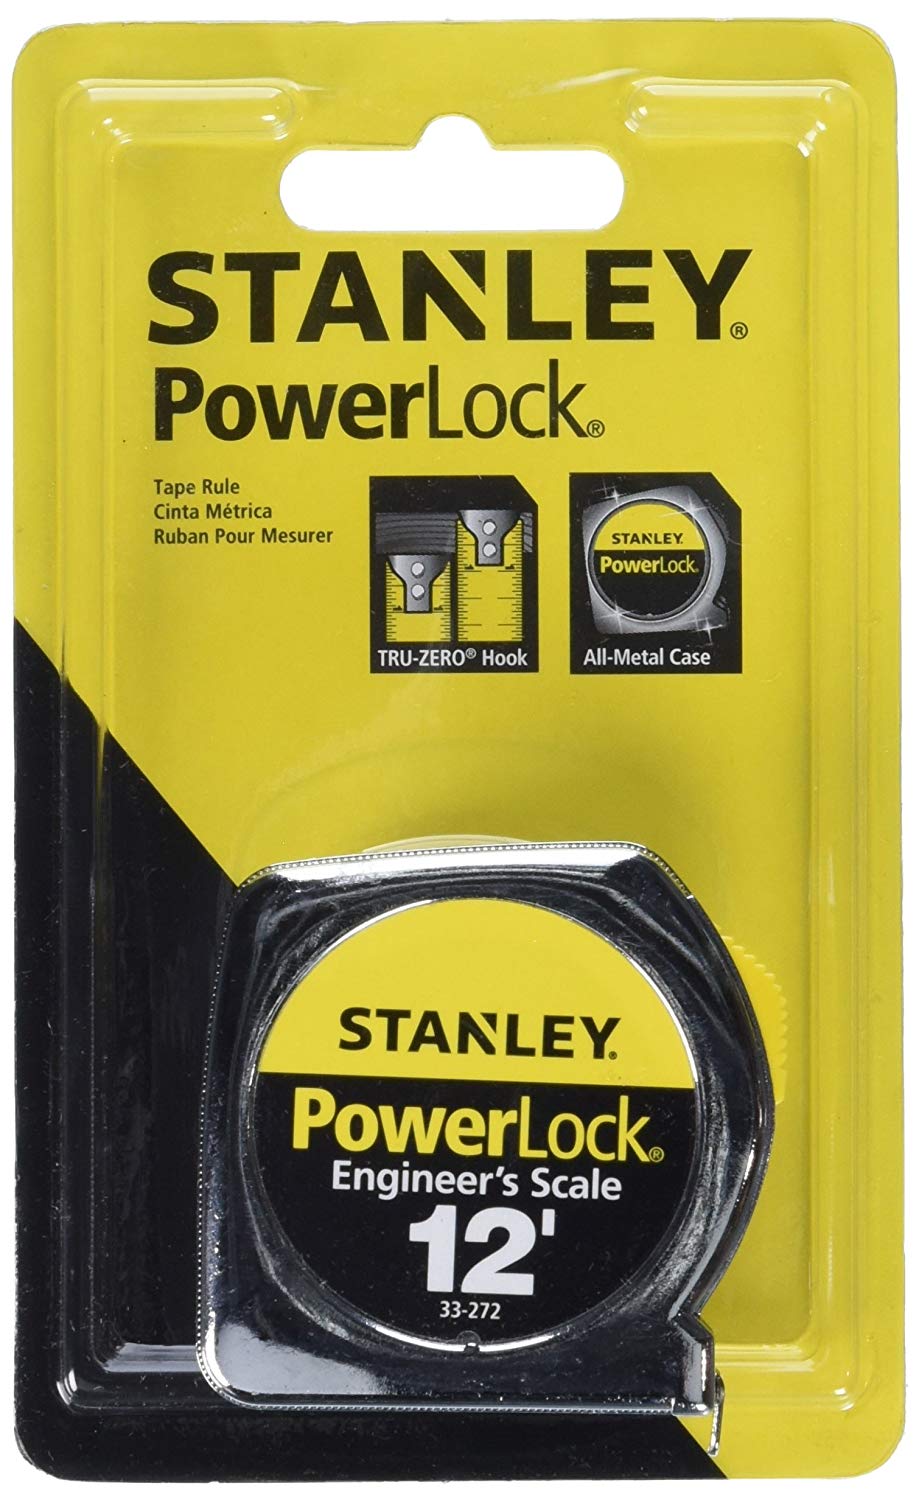 Stanley 25' x 1 Powerlock Tape Rule